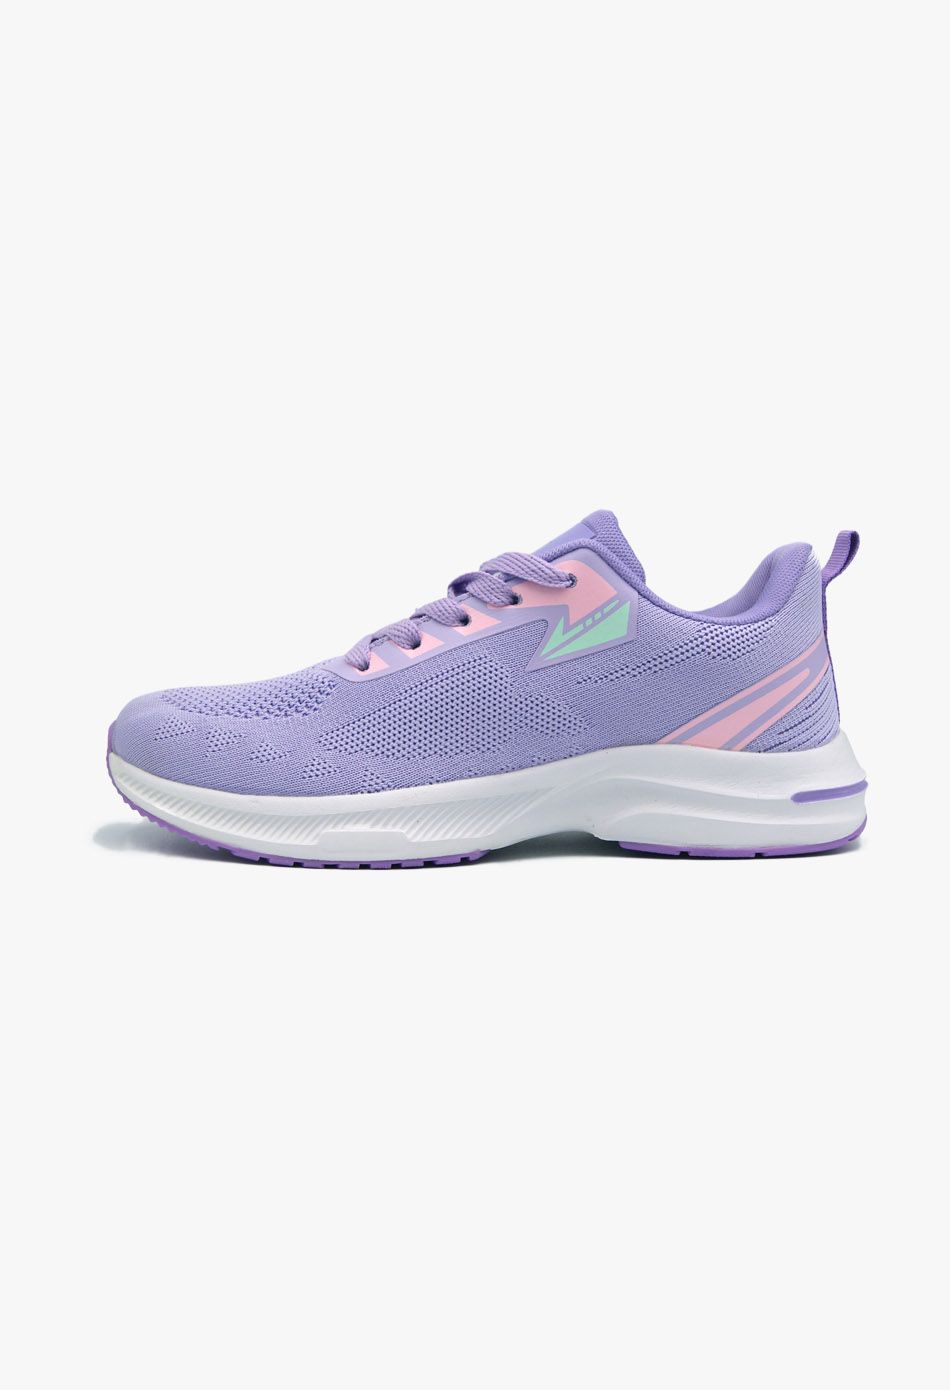 Γυναικεία Sneakers Μωβ / B-41-purple Γυναικεία Αθλητικά και Sneakers joya.gr